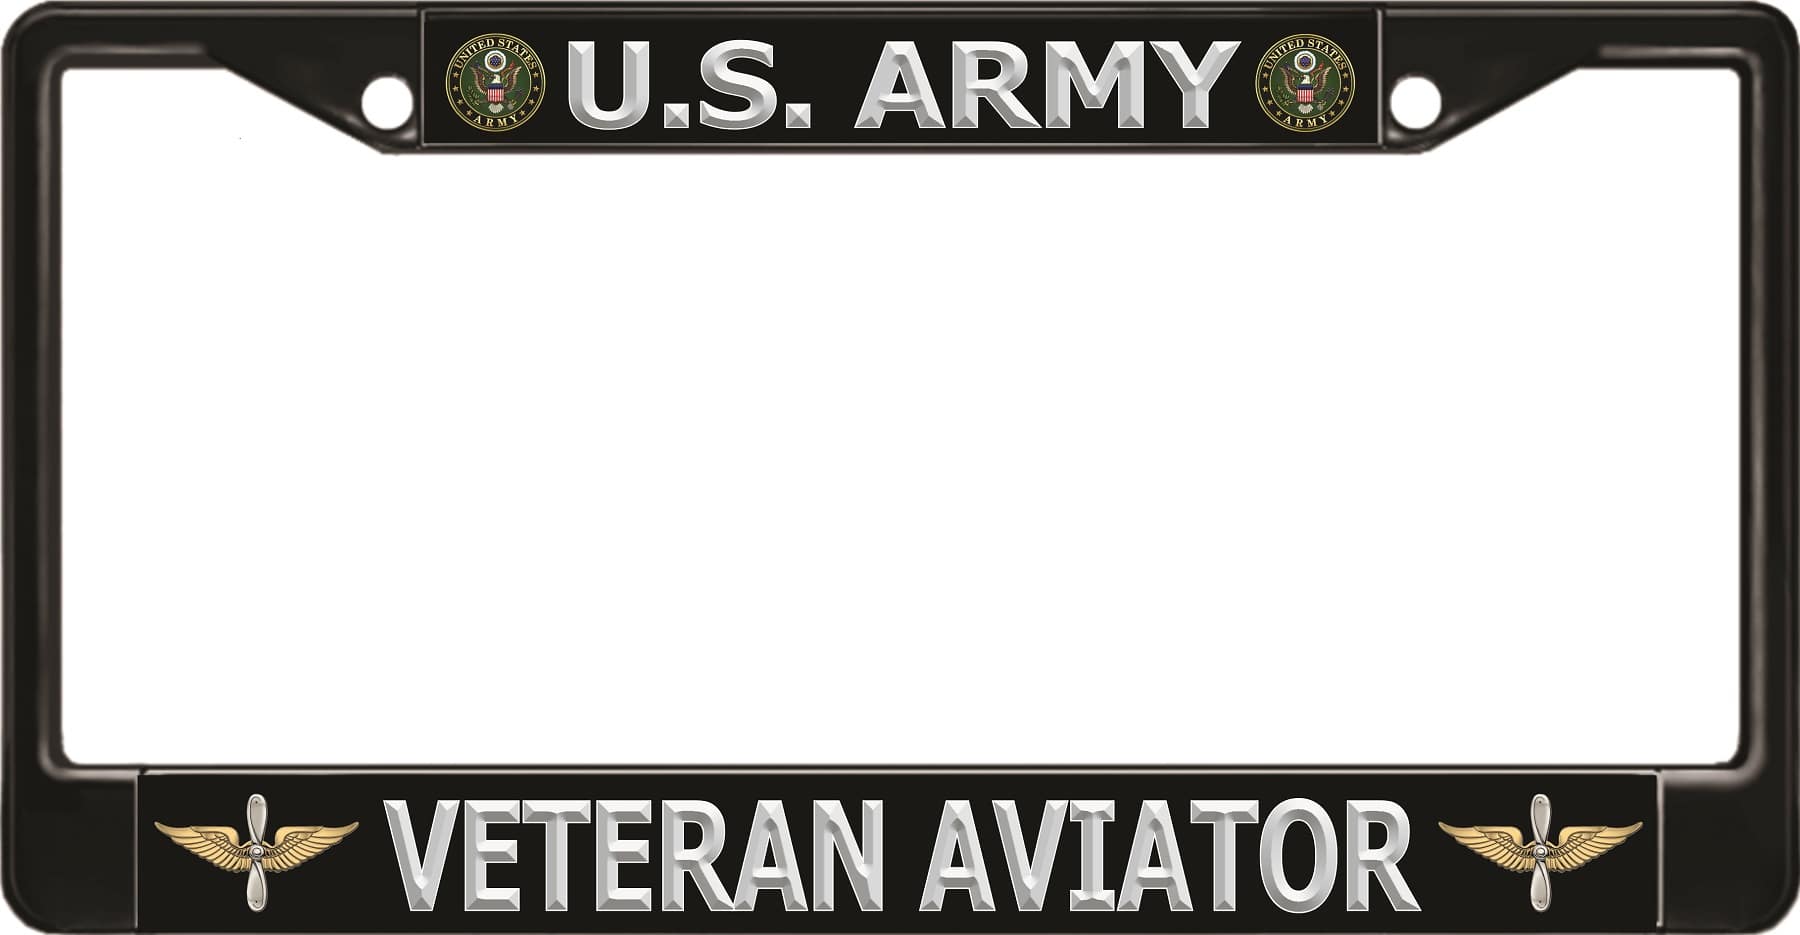 U.S. Army Veteran Aviator Black License Plate FRAME